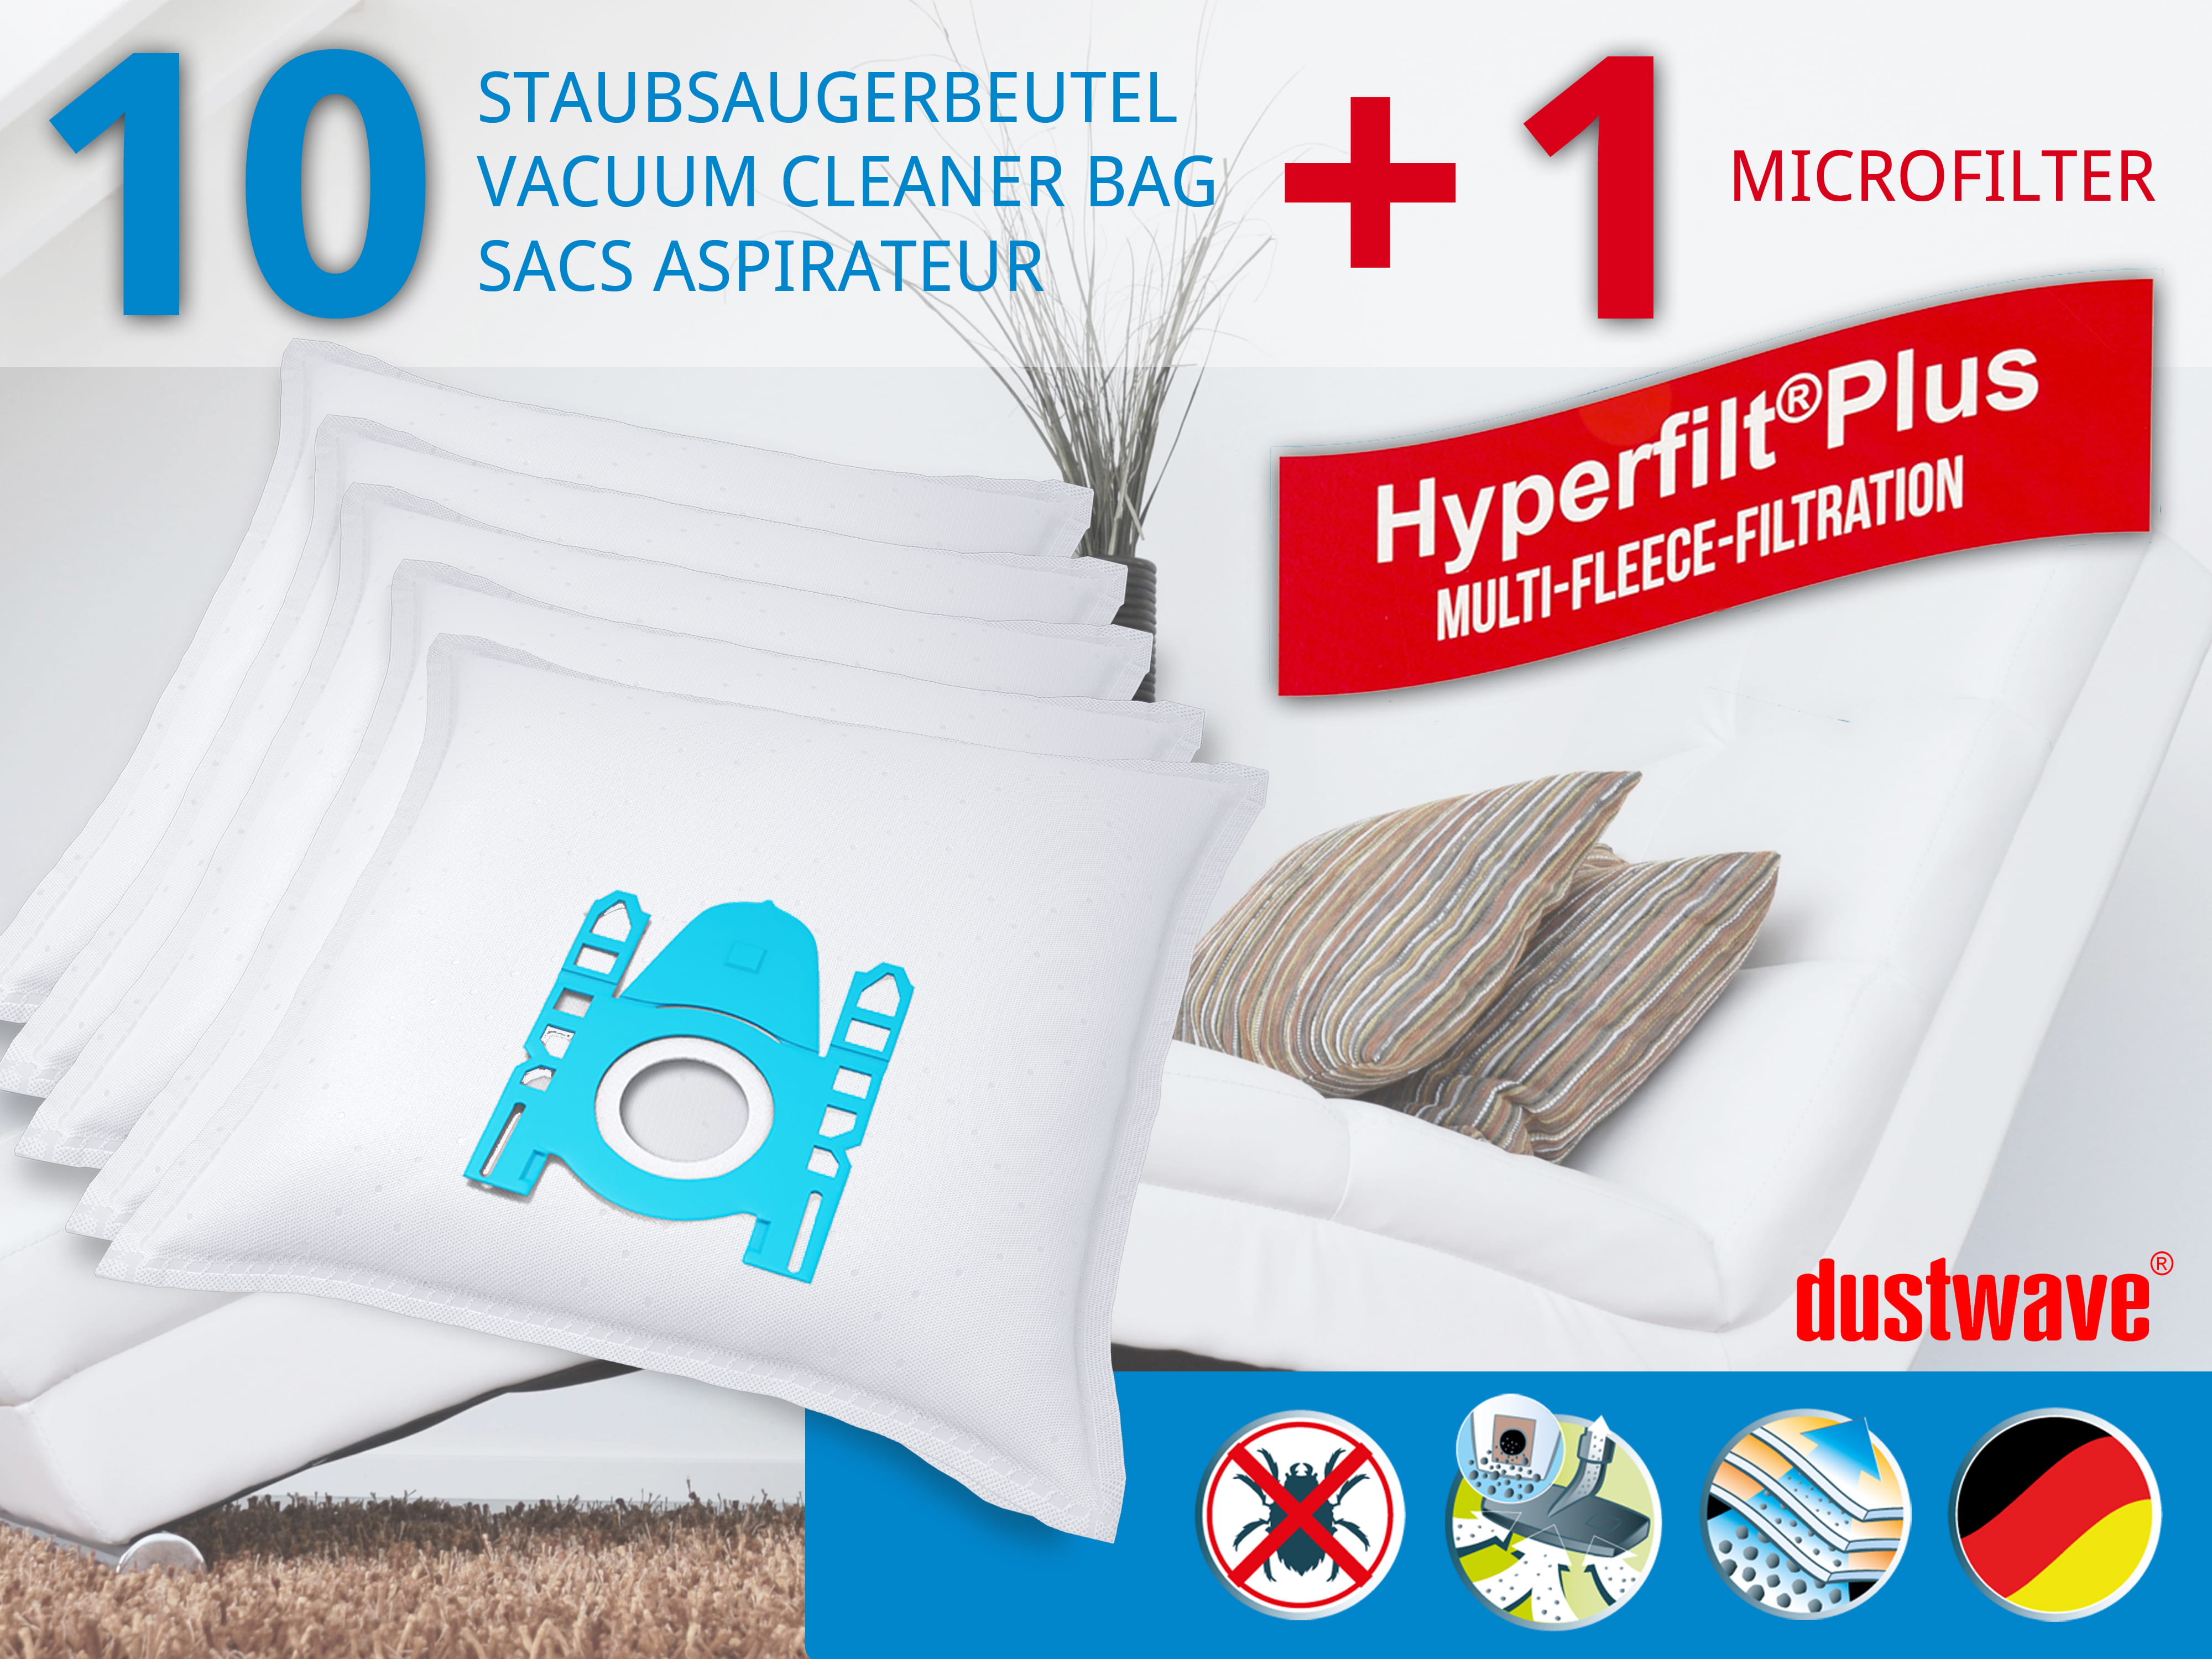 Dustwave® 10 Staubsaugerbeutel für AquaPur SIE 670 - hocheffizient, mehrlagiges Mikrovlies mit Hygieneverschluss - Made in Germany